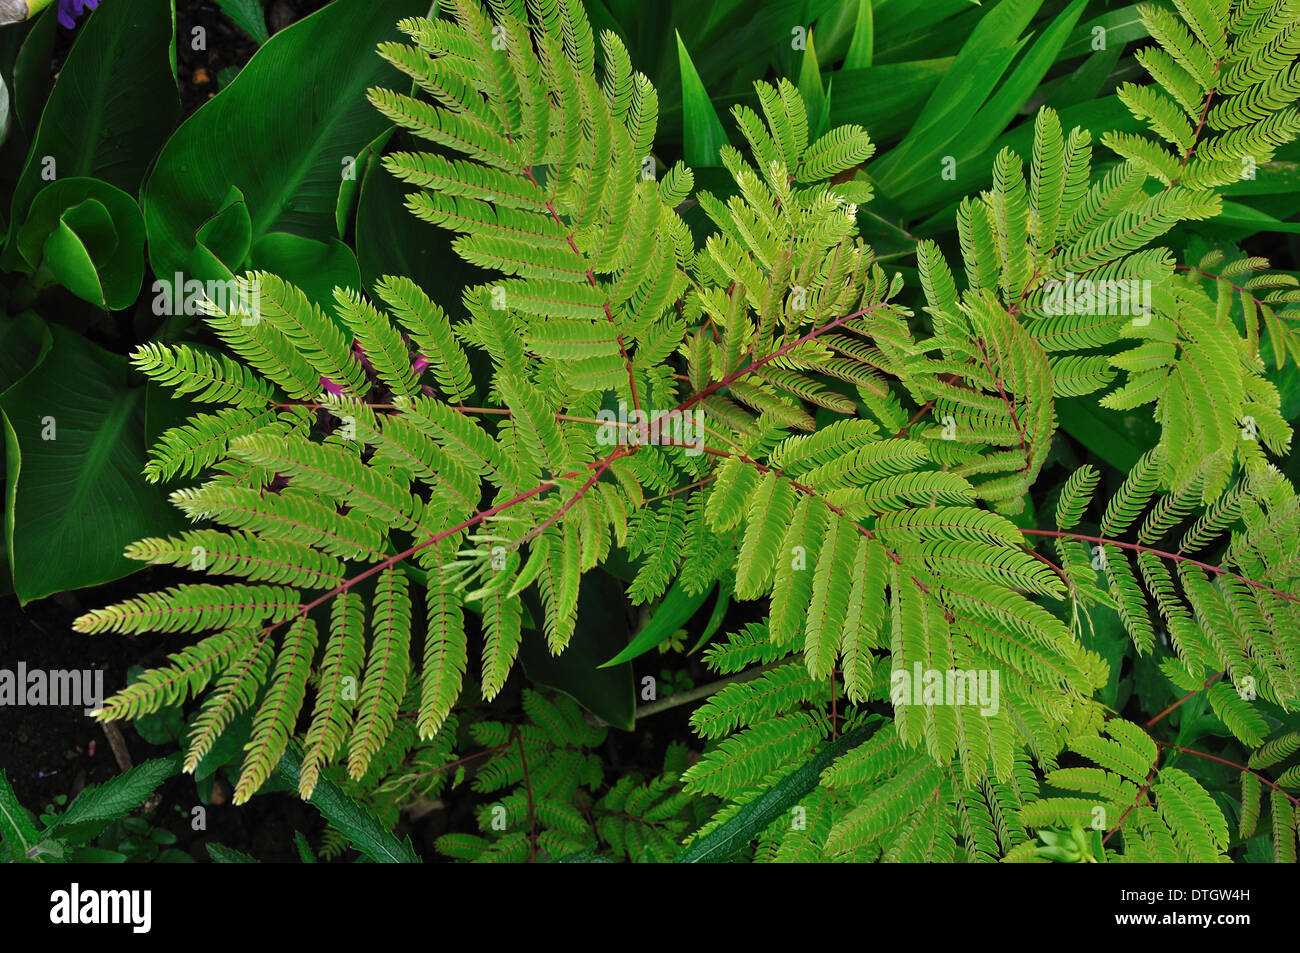 Green foliage of albizia shrub Stock Photo